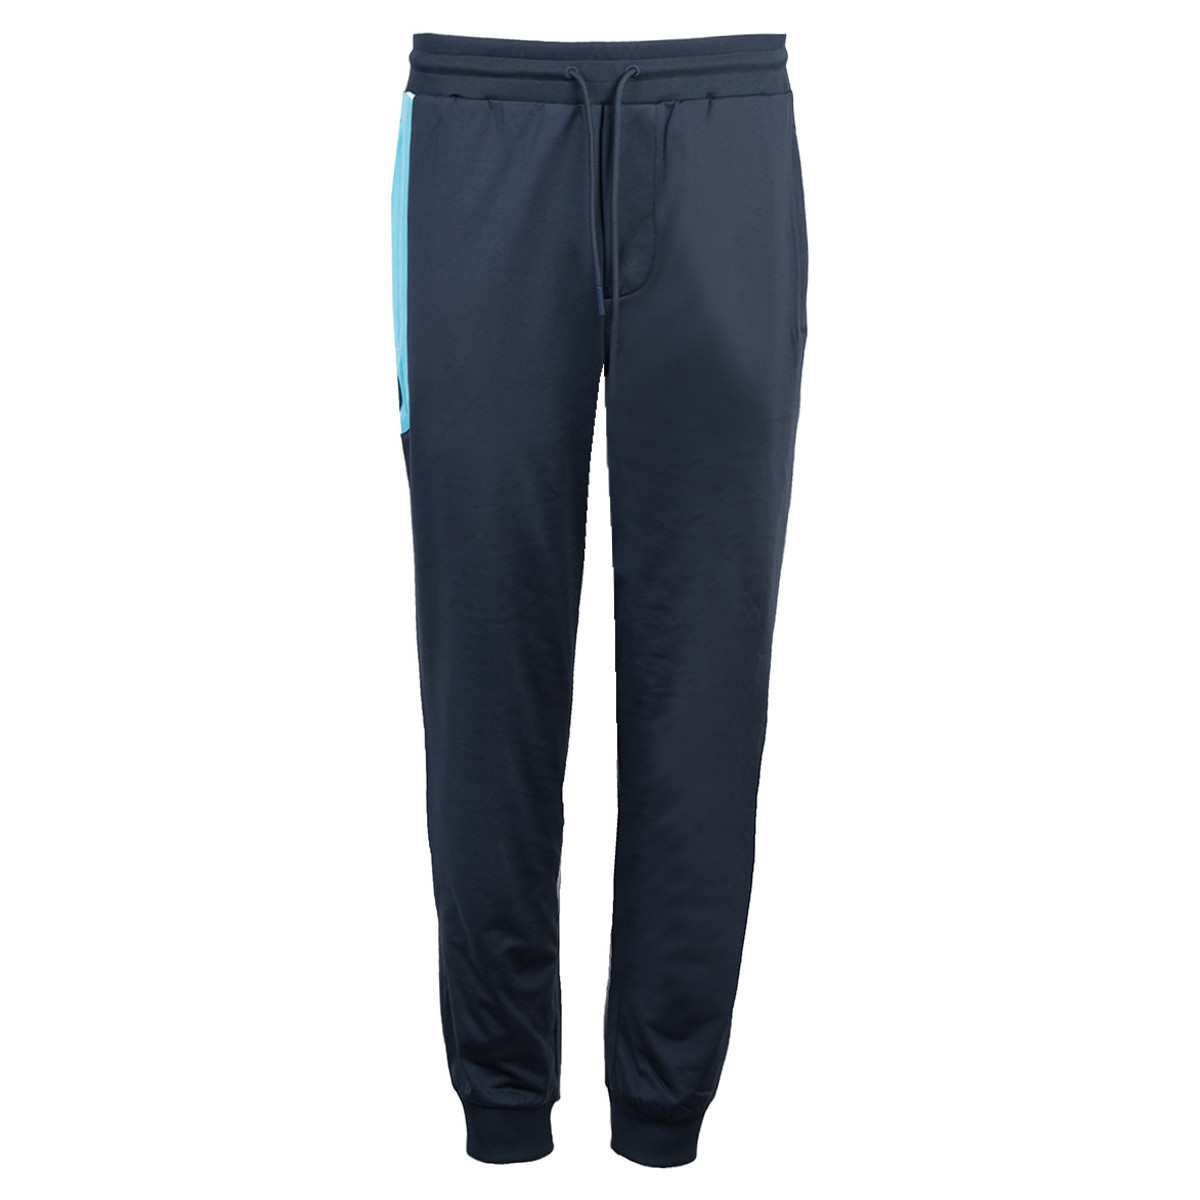 Textiel Heren Broeken / Pantalons Bikkembergs C 1 83C GS E B010 Blauw